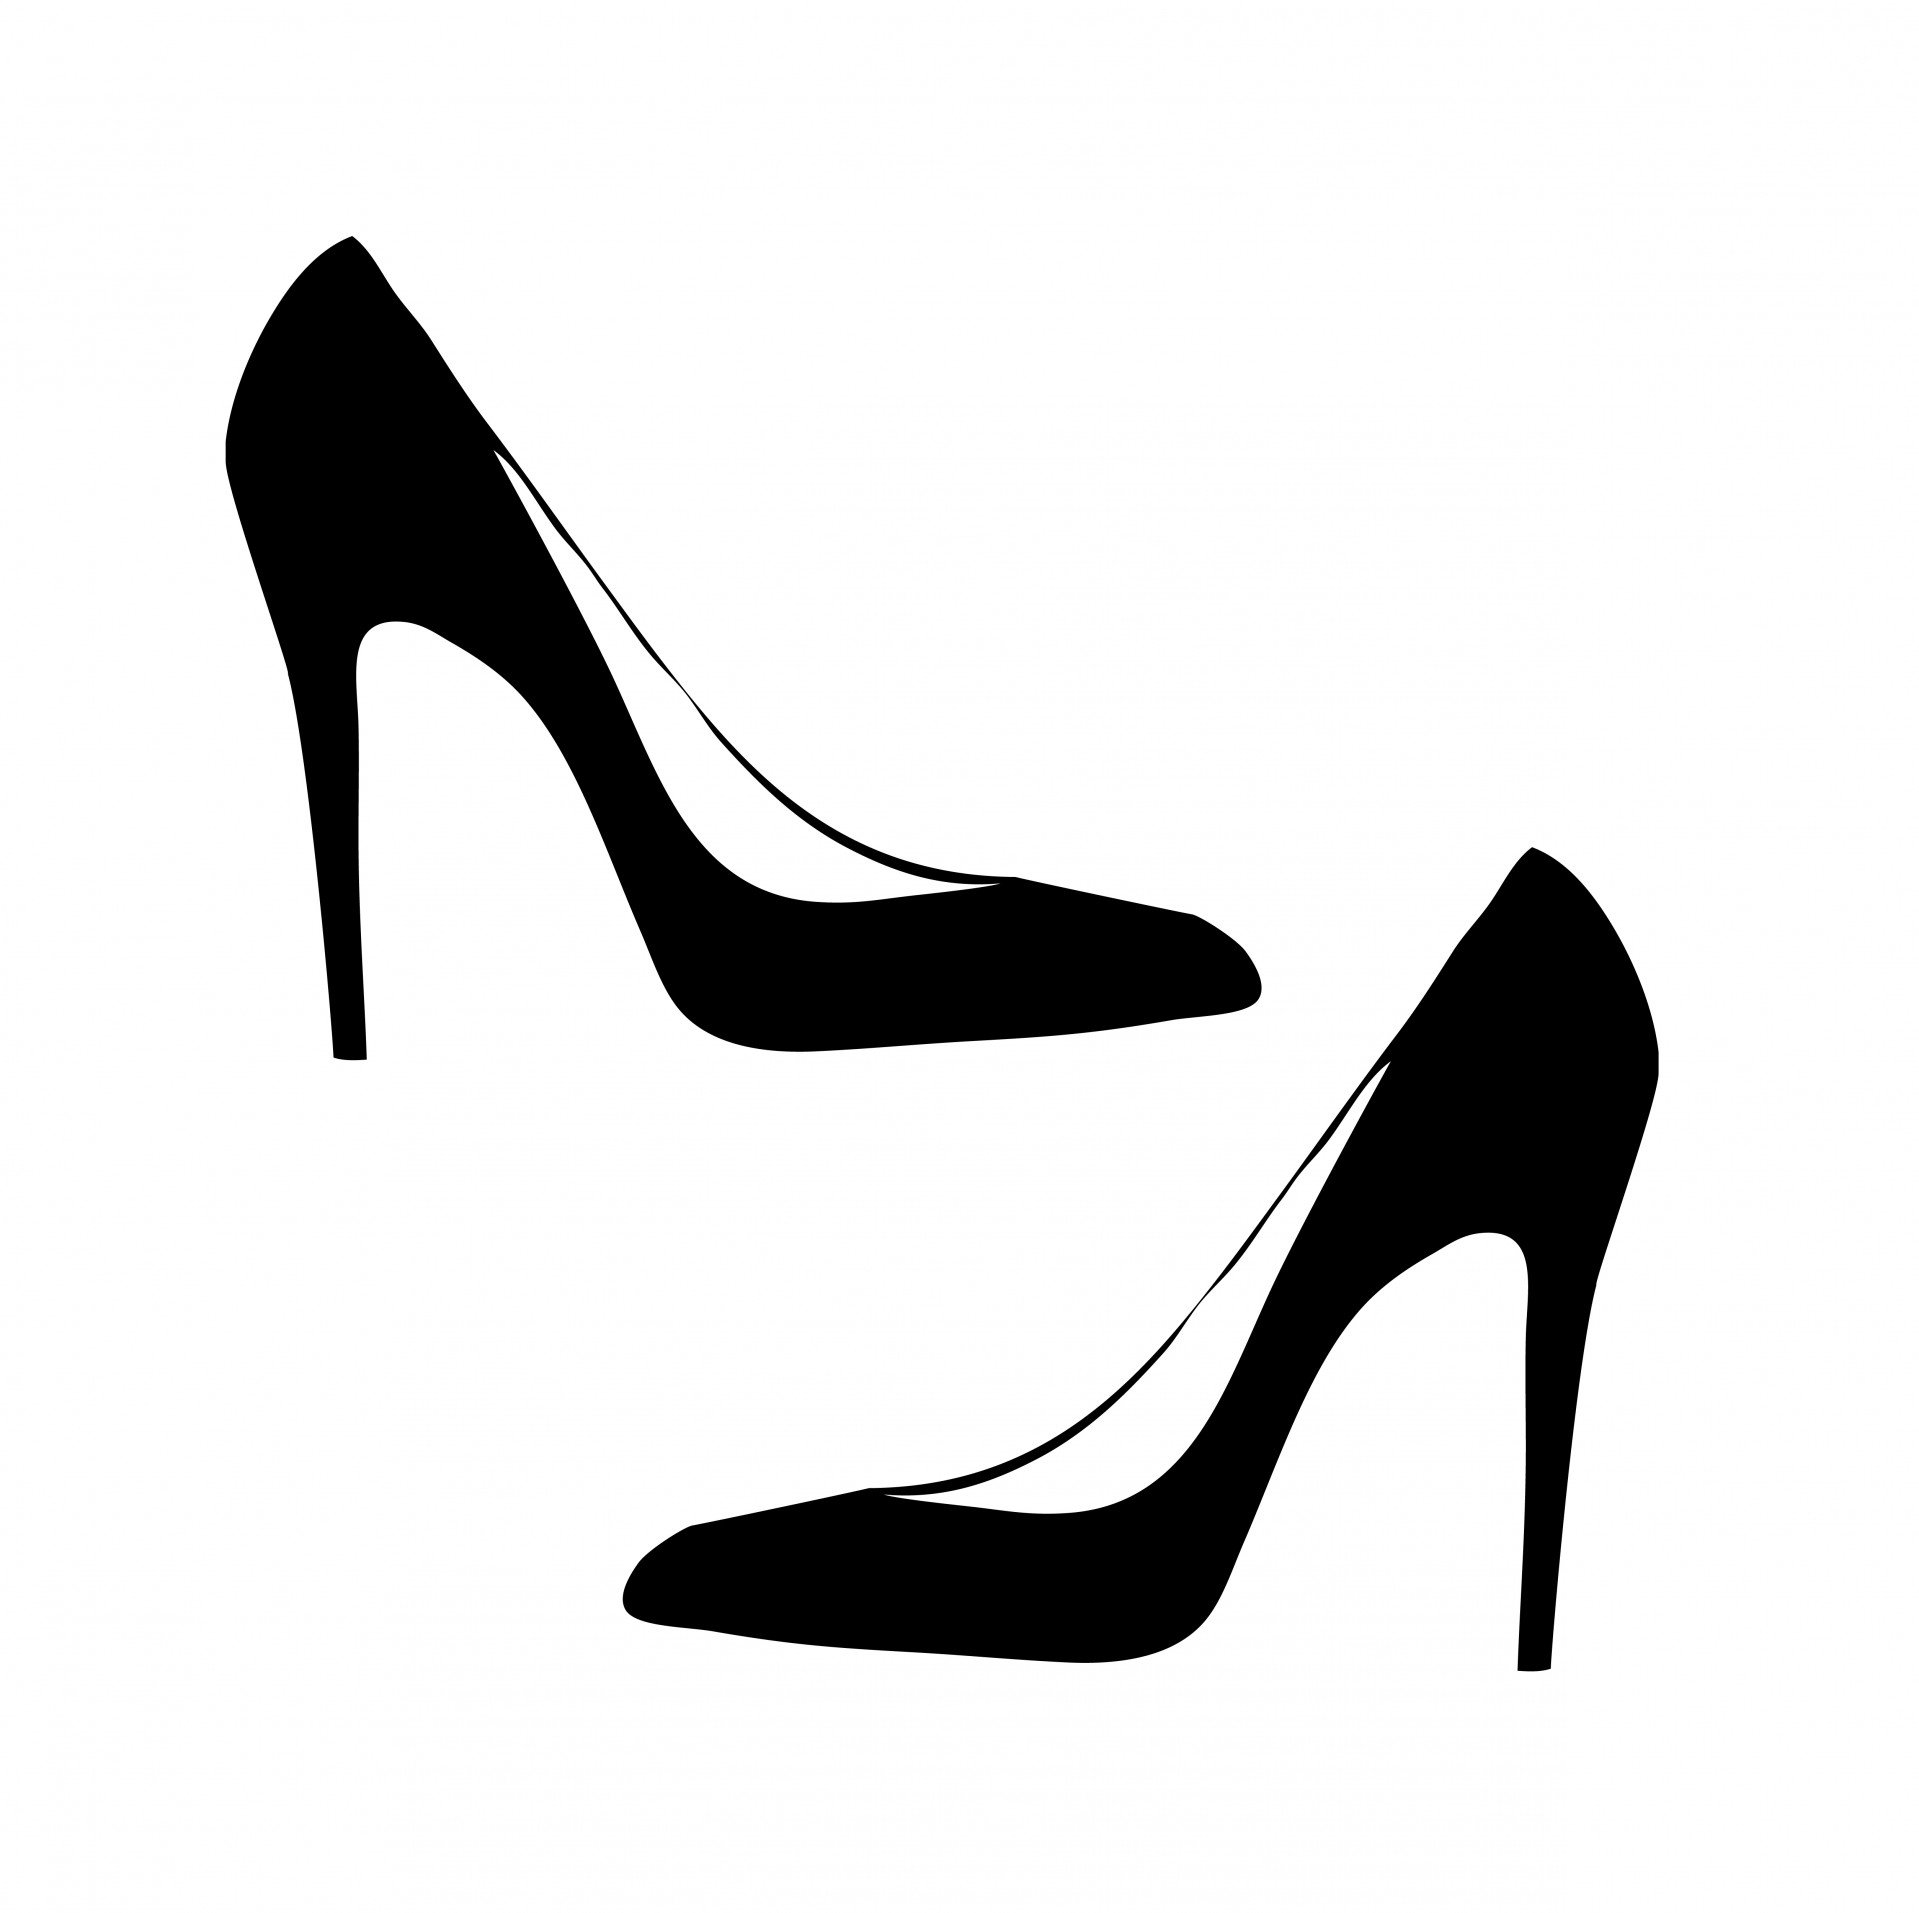 Shoes For Women Black - Women Shoes Clipart